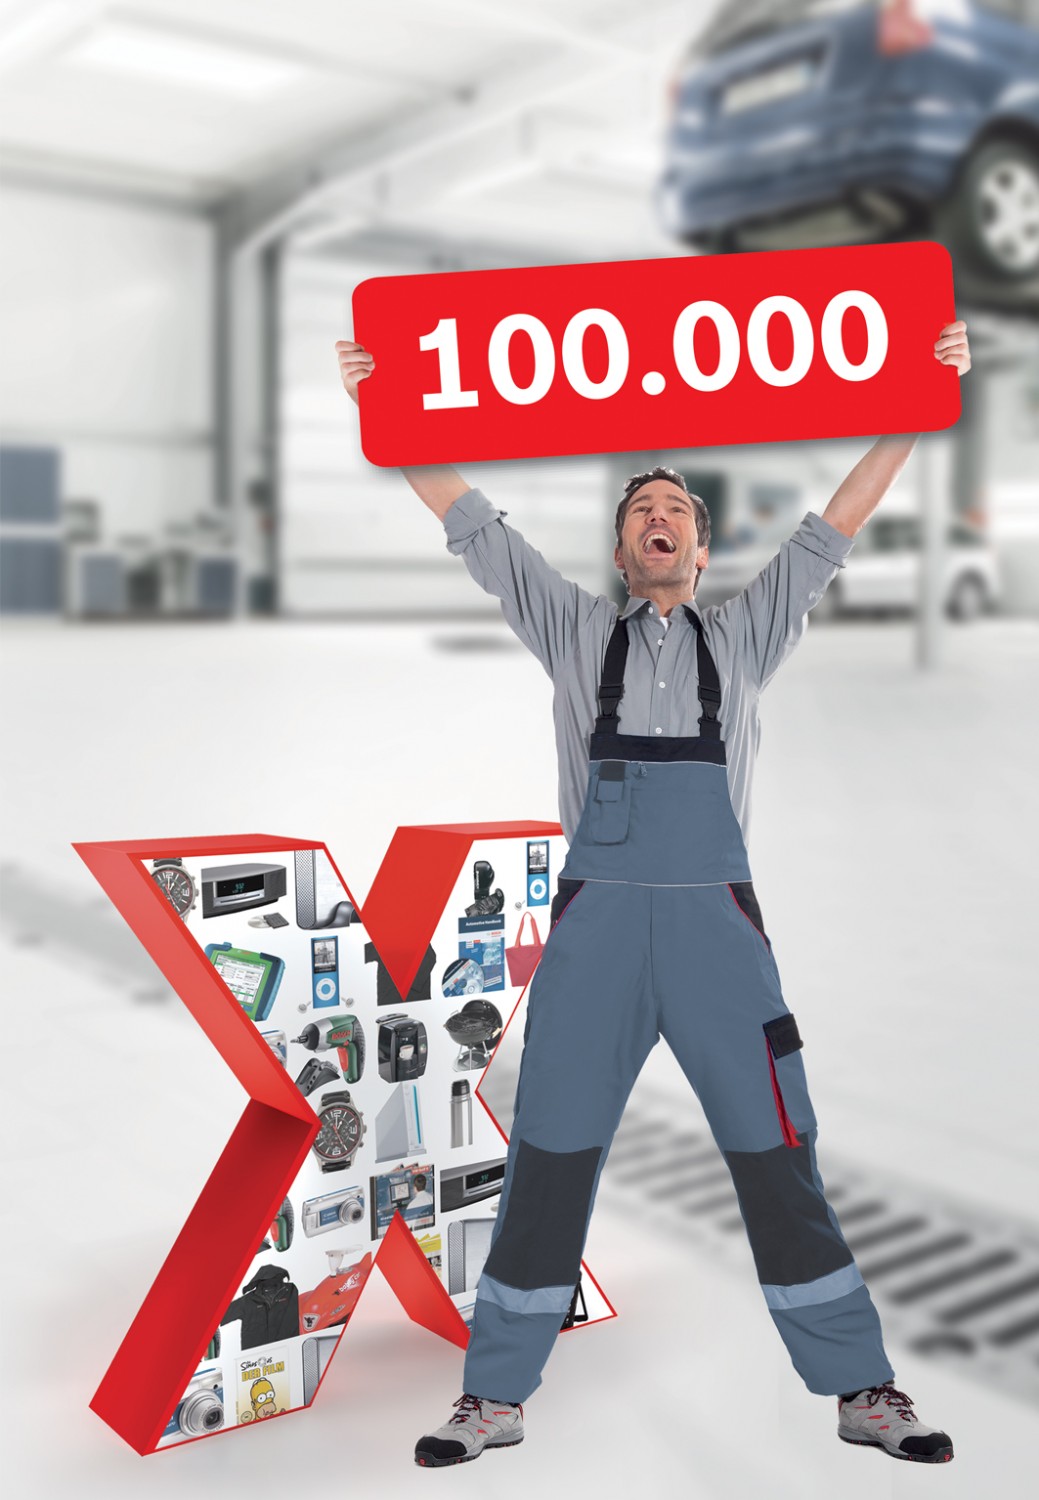 Понад 100 000 СТО і магазинів автозапчастин зареєстровані в програмі лояльності eXtra у всьому світі